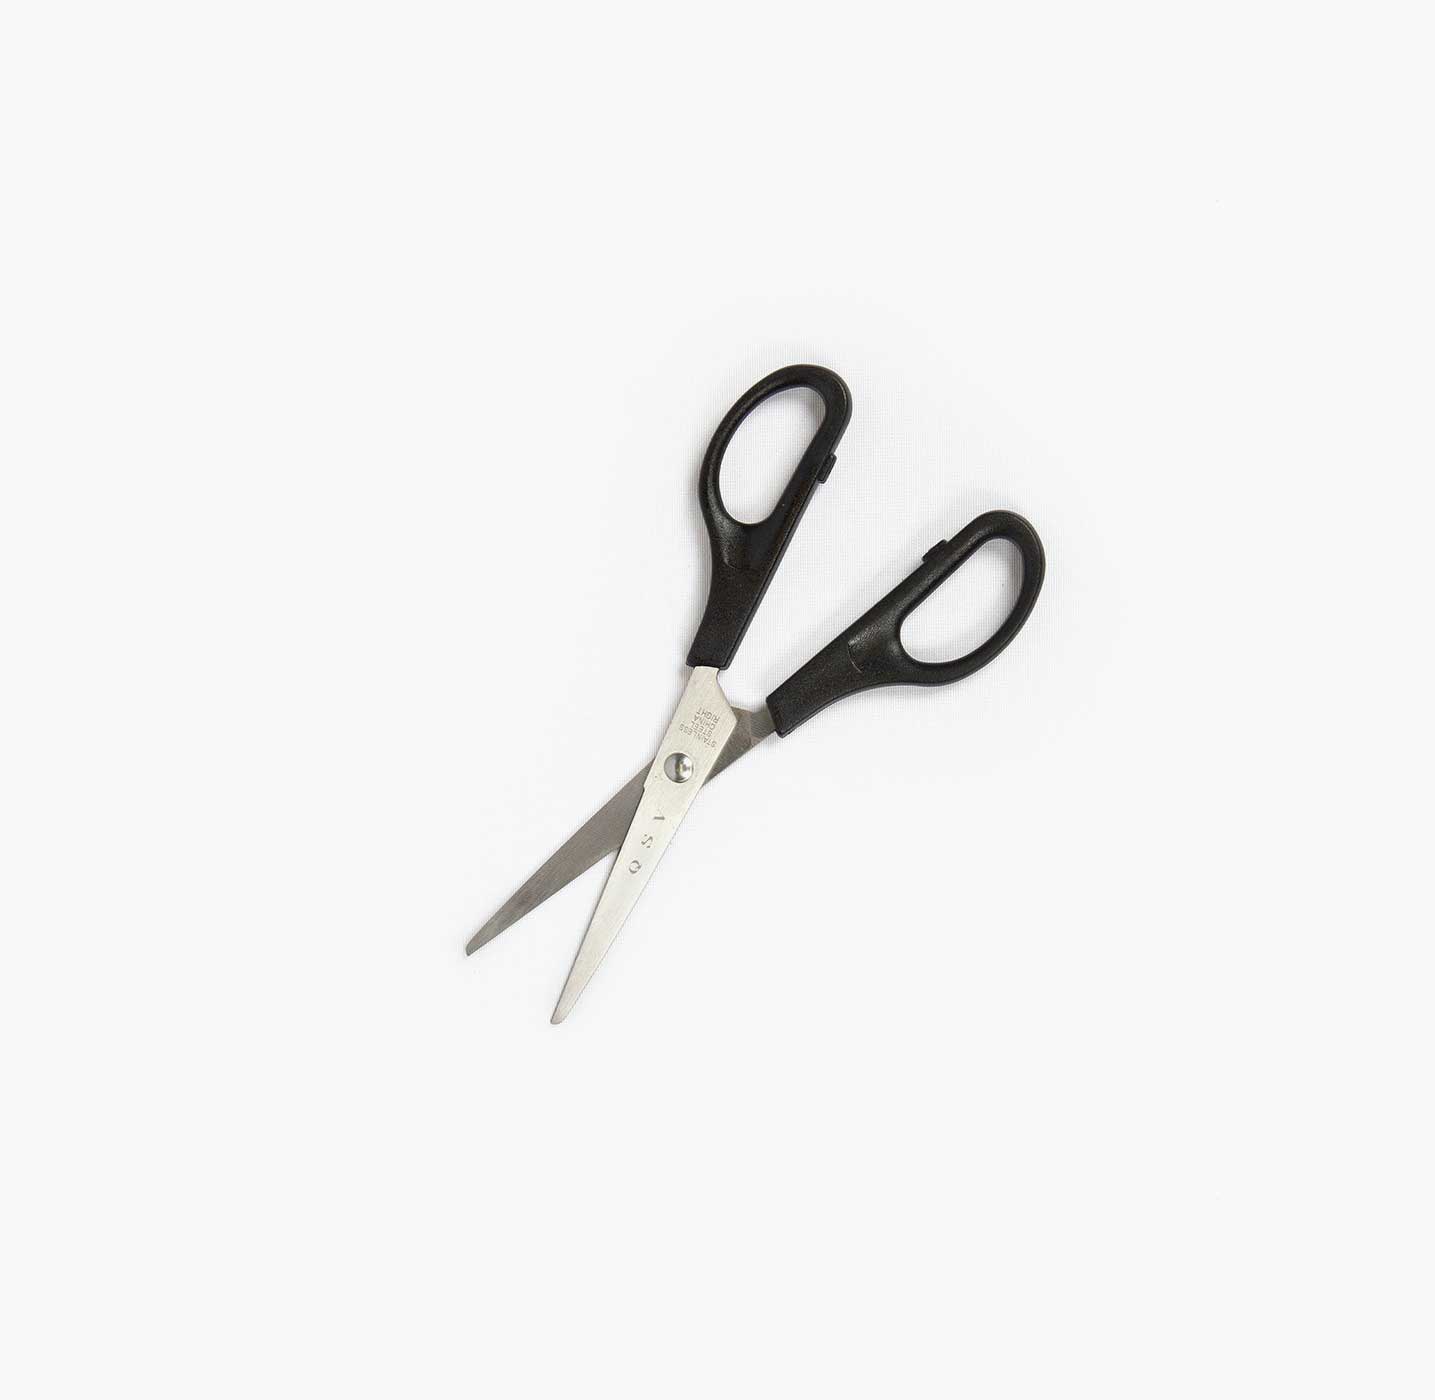 micador jr. safe scissors, left or right handed – A Paper Hat